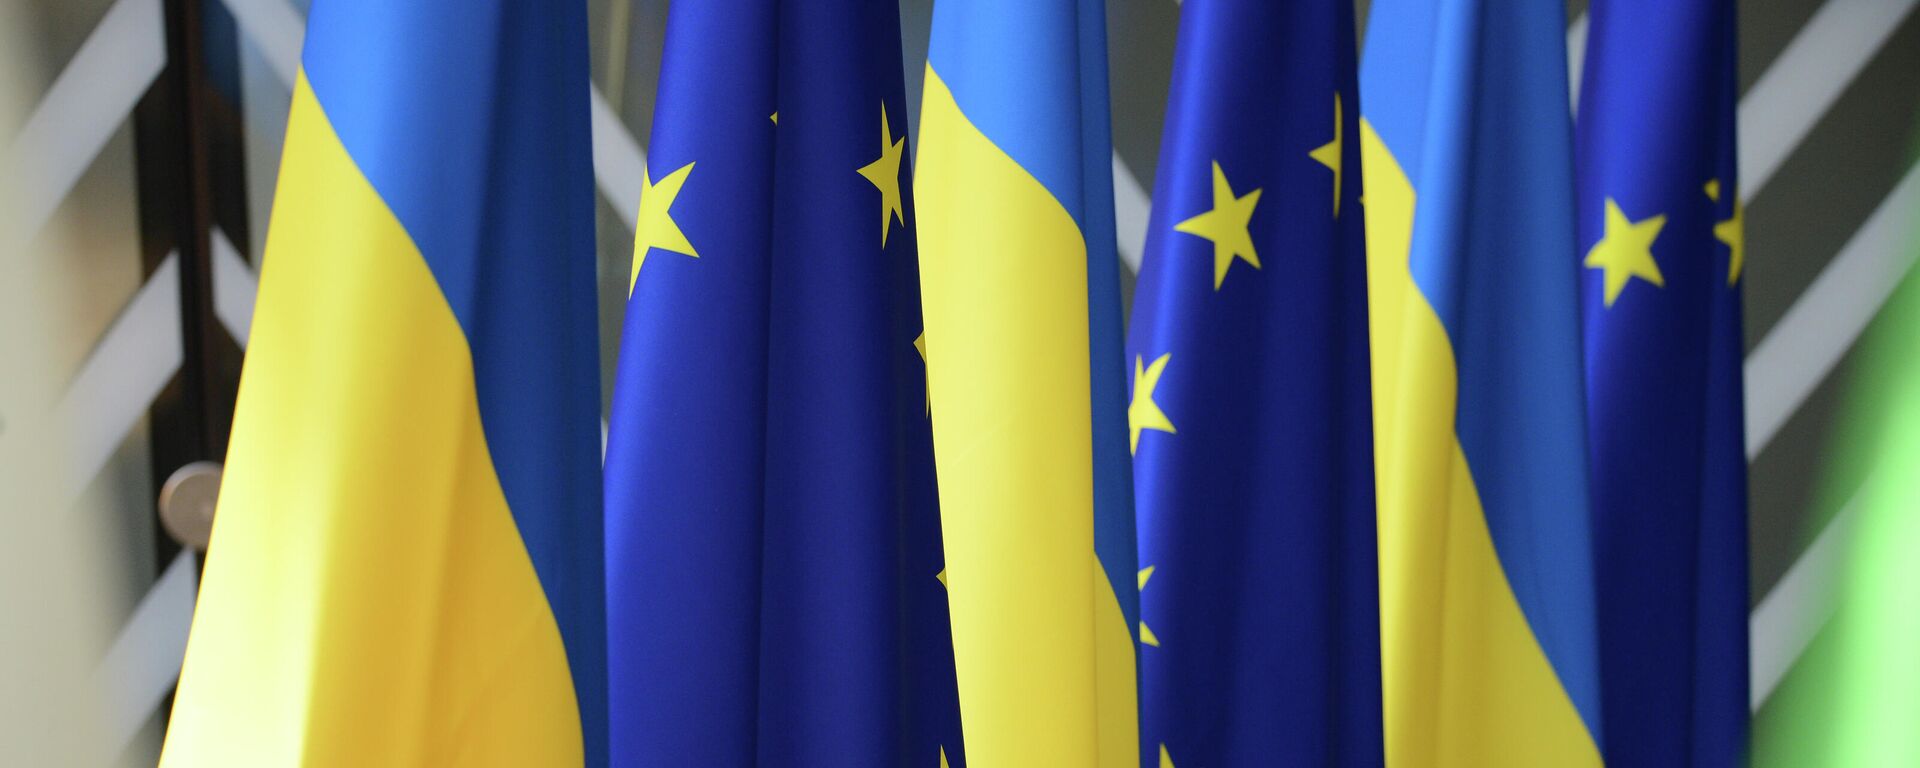 Флаги Украины и Европейского Союза. - Sputnik Молдова, 1920, 23.08.2021